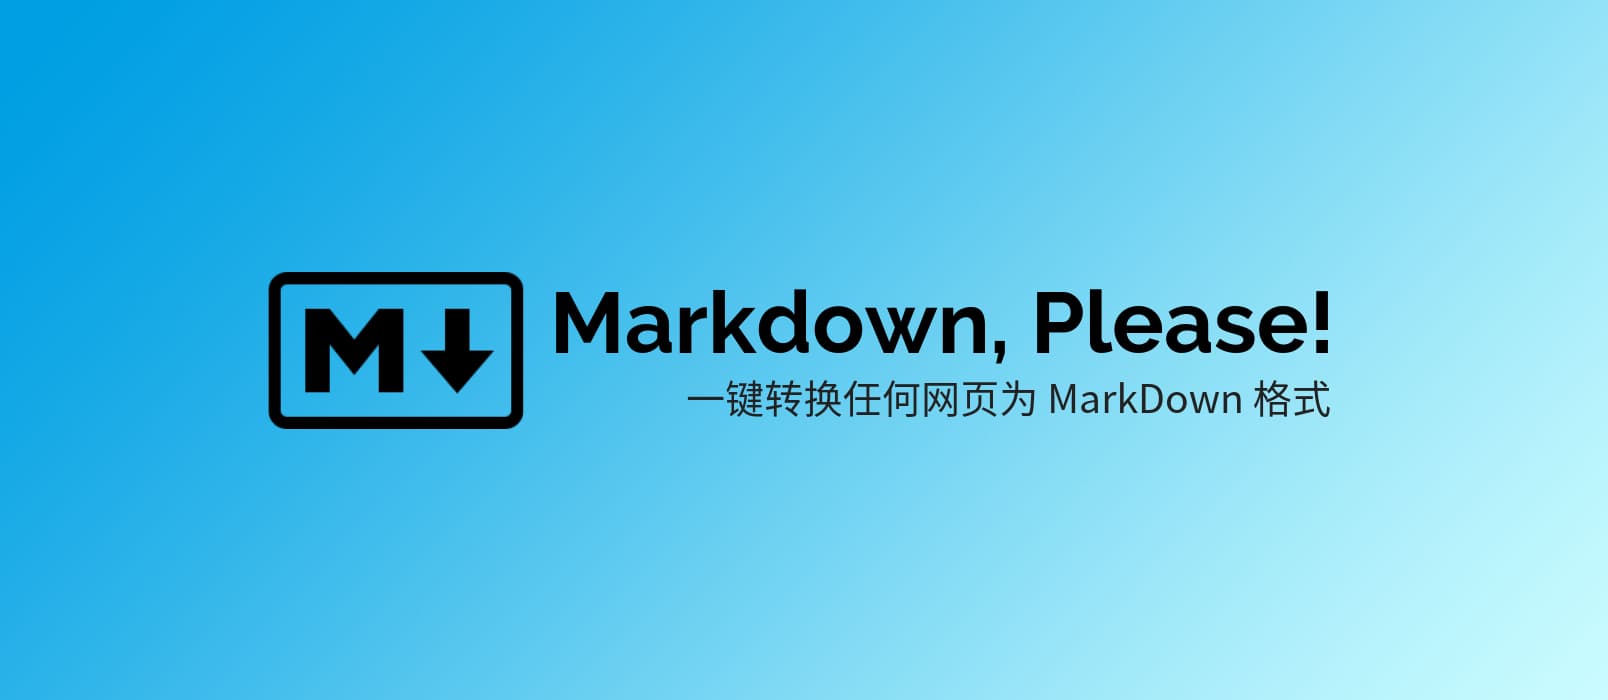 Markdown, Please! 将任意网页转换为 MarkDown 格式 1